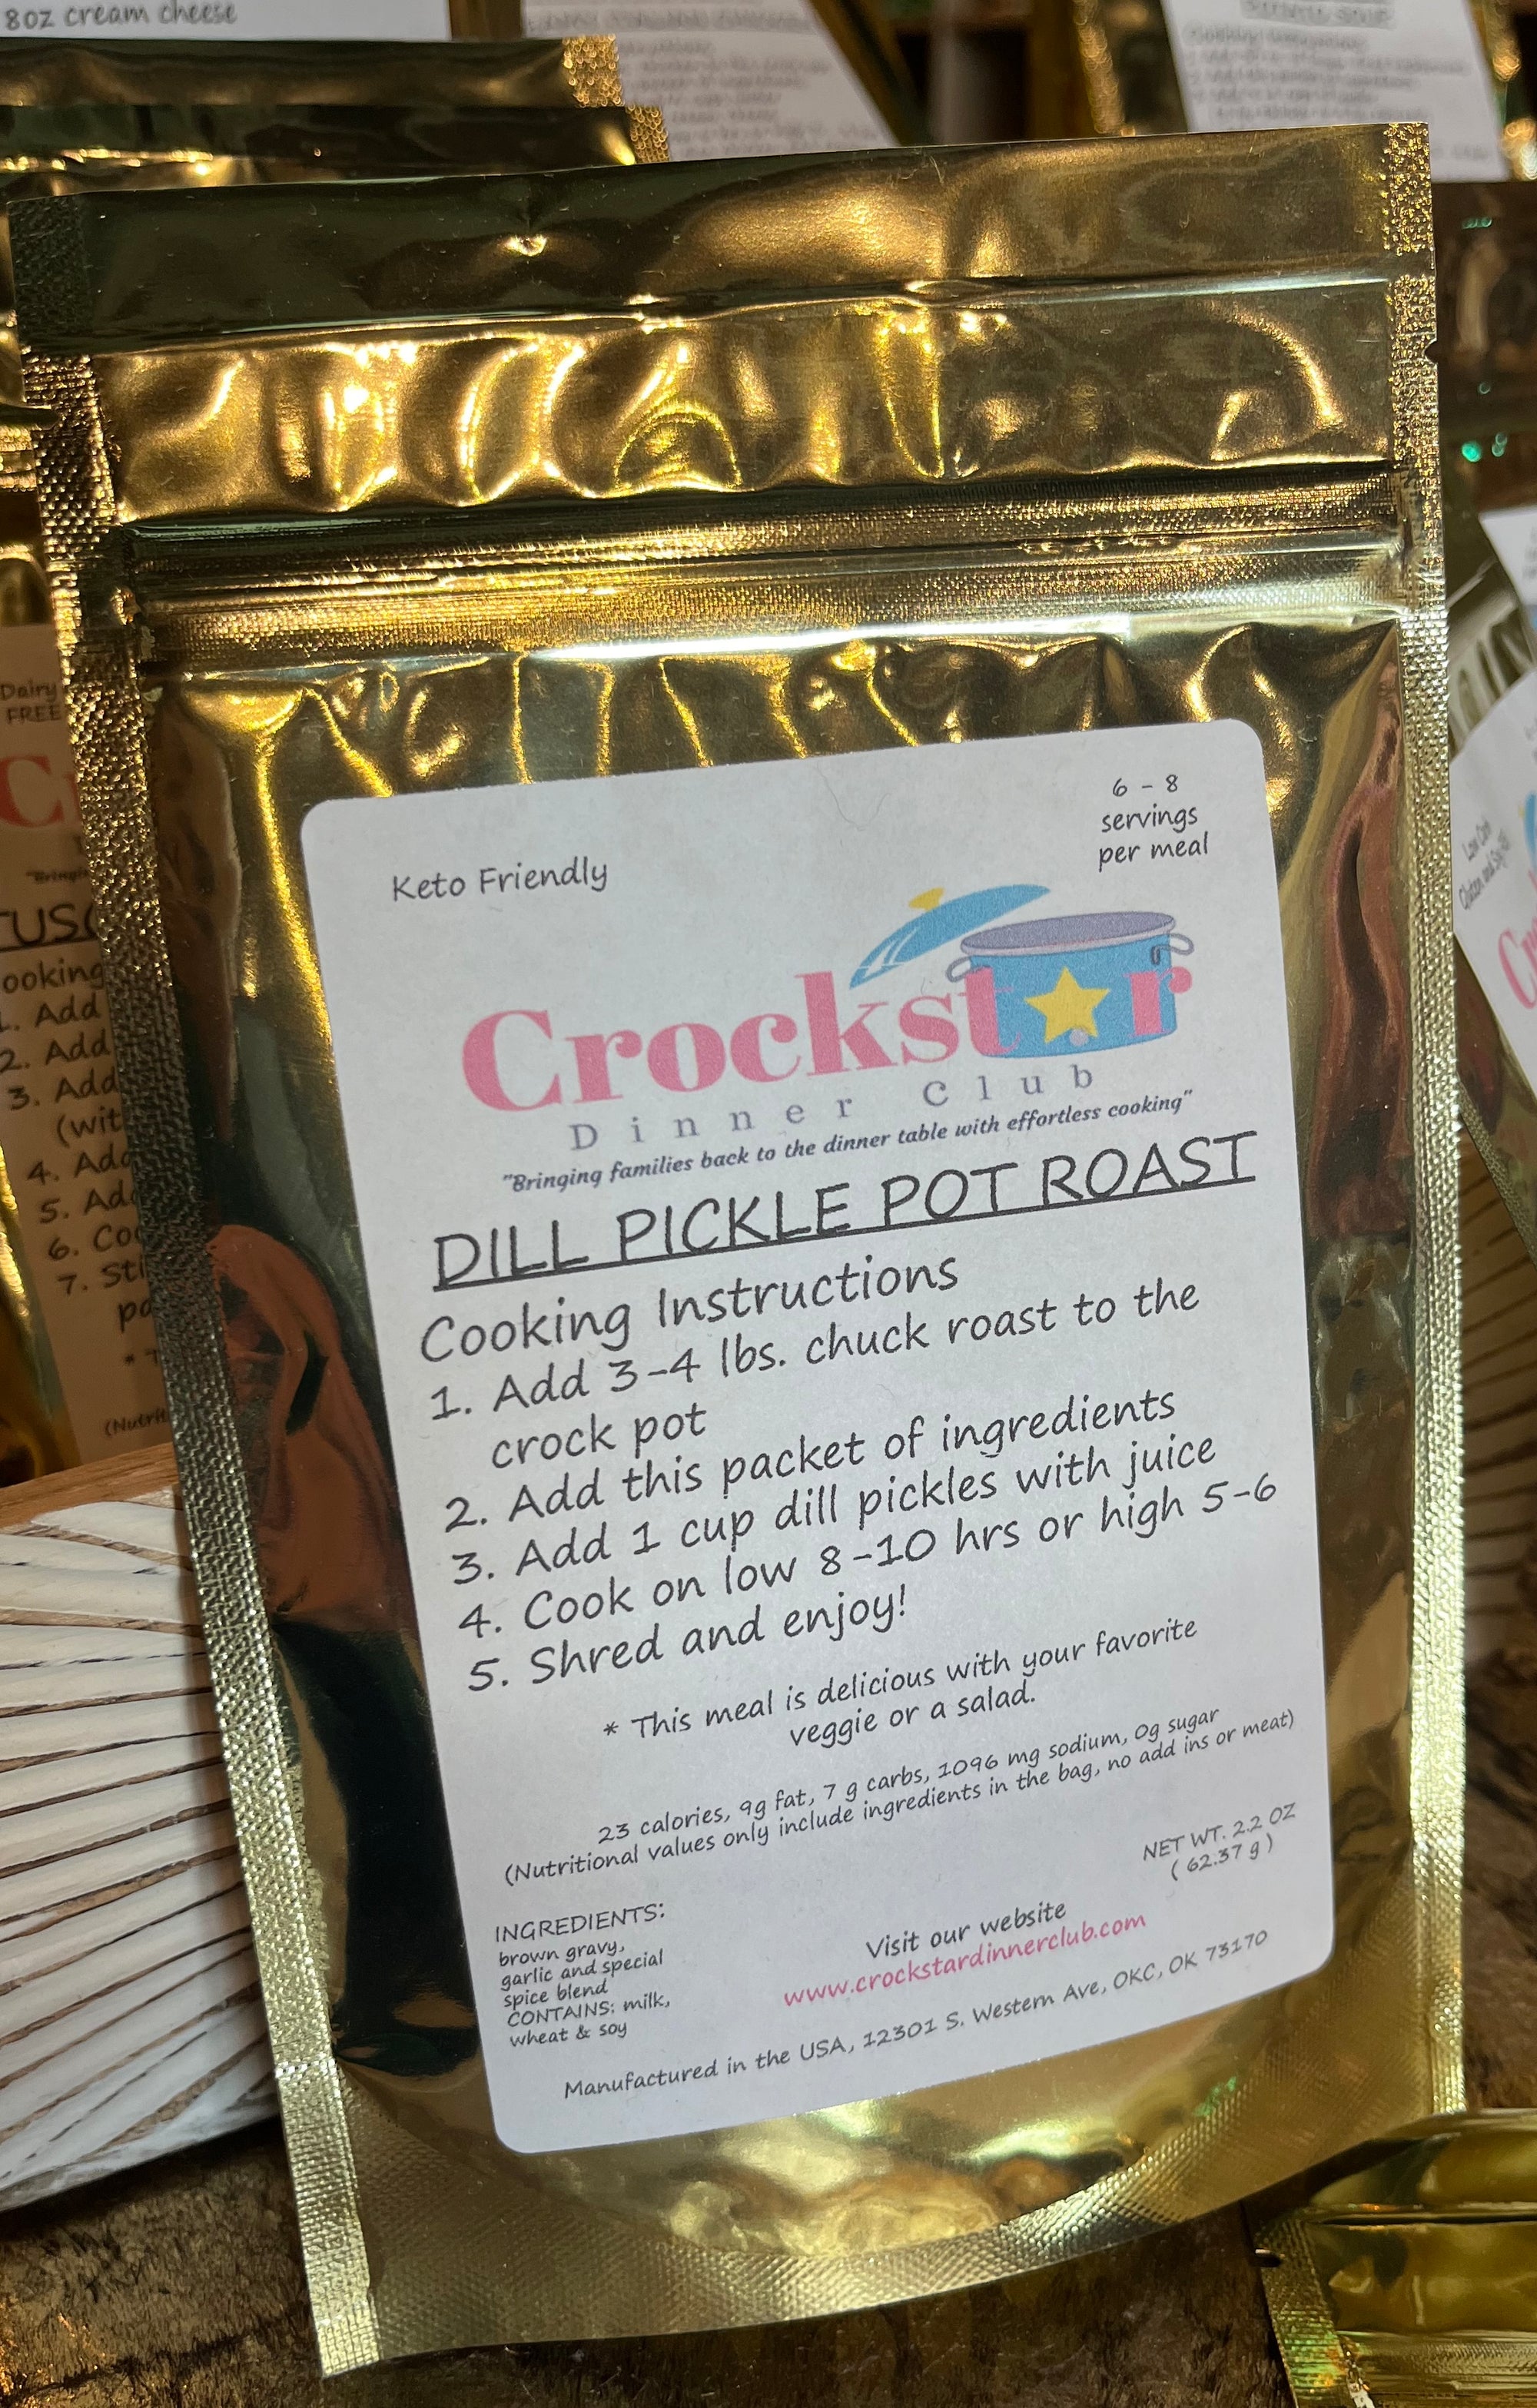 Crockstar Dinner Club - Dill Pickle Pot Roast